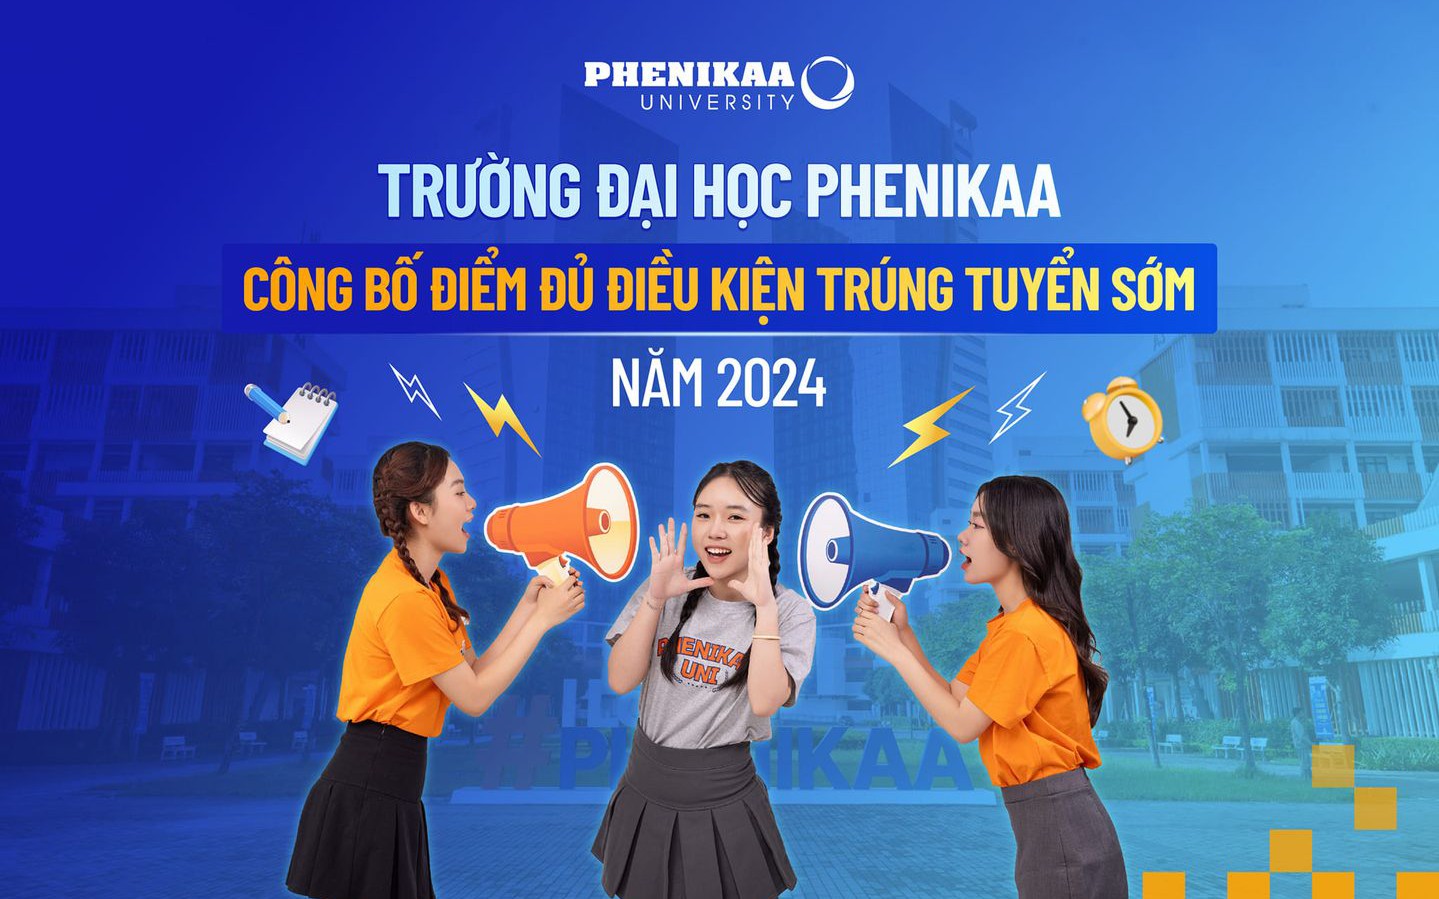 Trường đại học Phenikaa công bố điểm đủ điều kiện trúng tuyển sớm đại học chính quy năm 2024